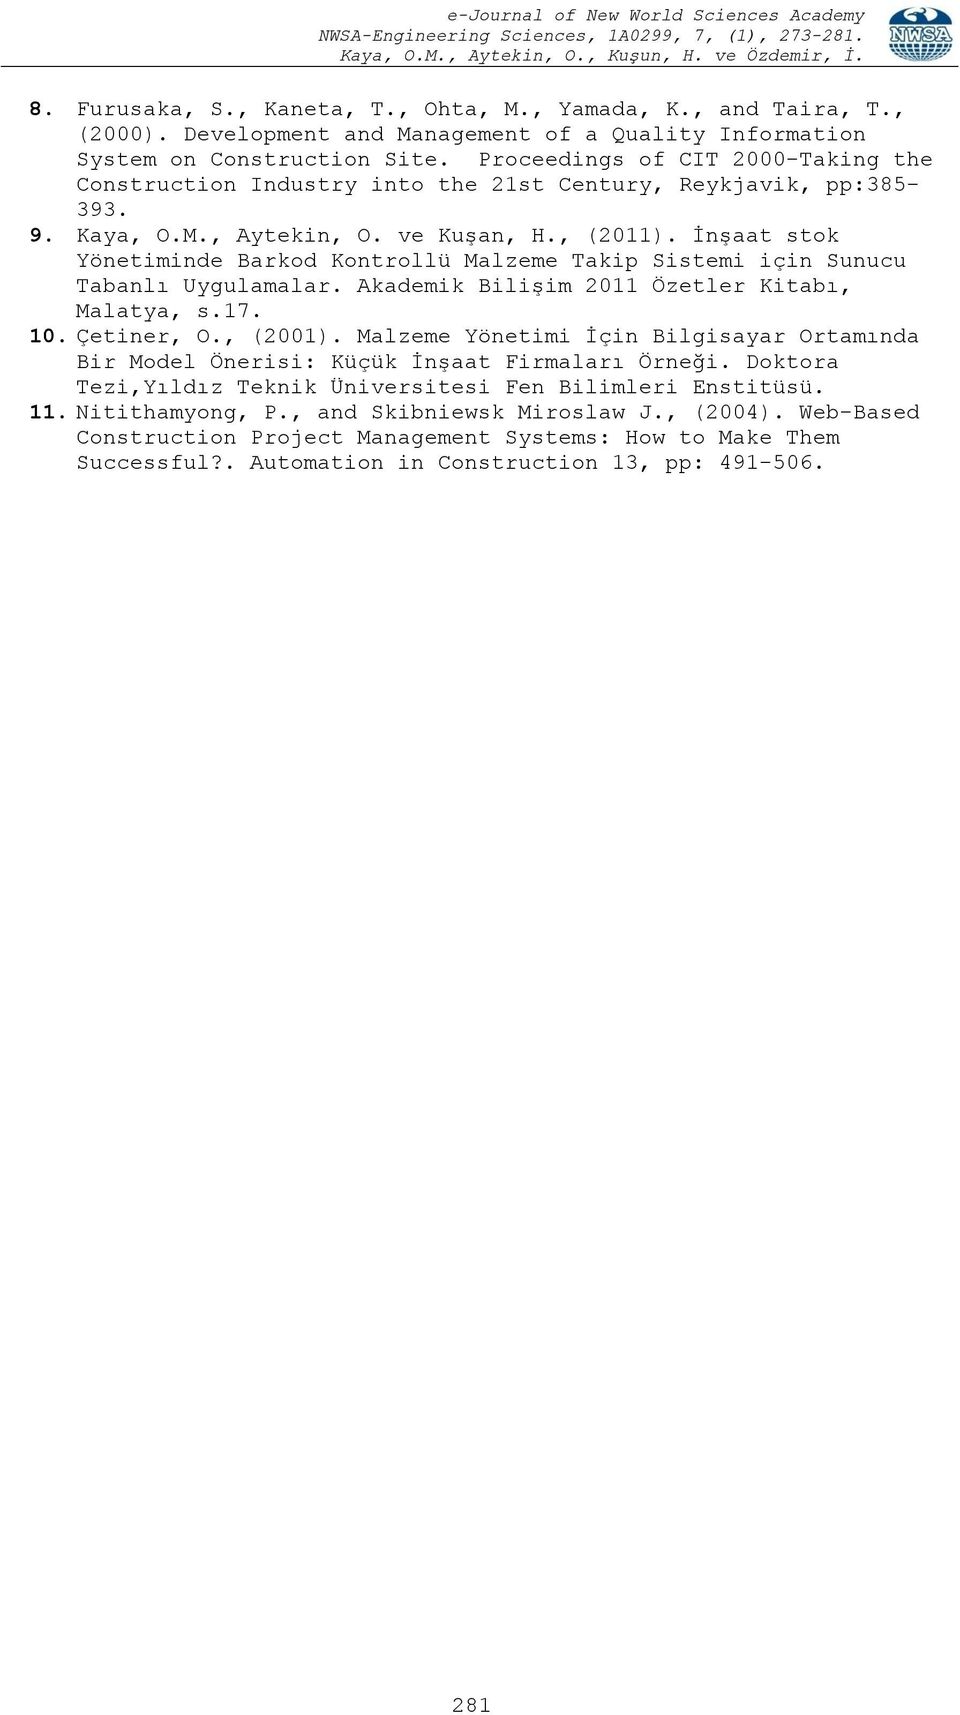 İnşaat stok Yönetiminde Barkod Kontrollü Malzeme Takip Sistemi için Sunucu Tabanlı Uygulamalar. Akademik Bilişim 2011 Özetler Kitabı, Malatya, s.17. 10. Çetiner, O., (2001).